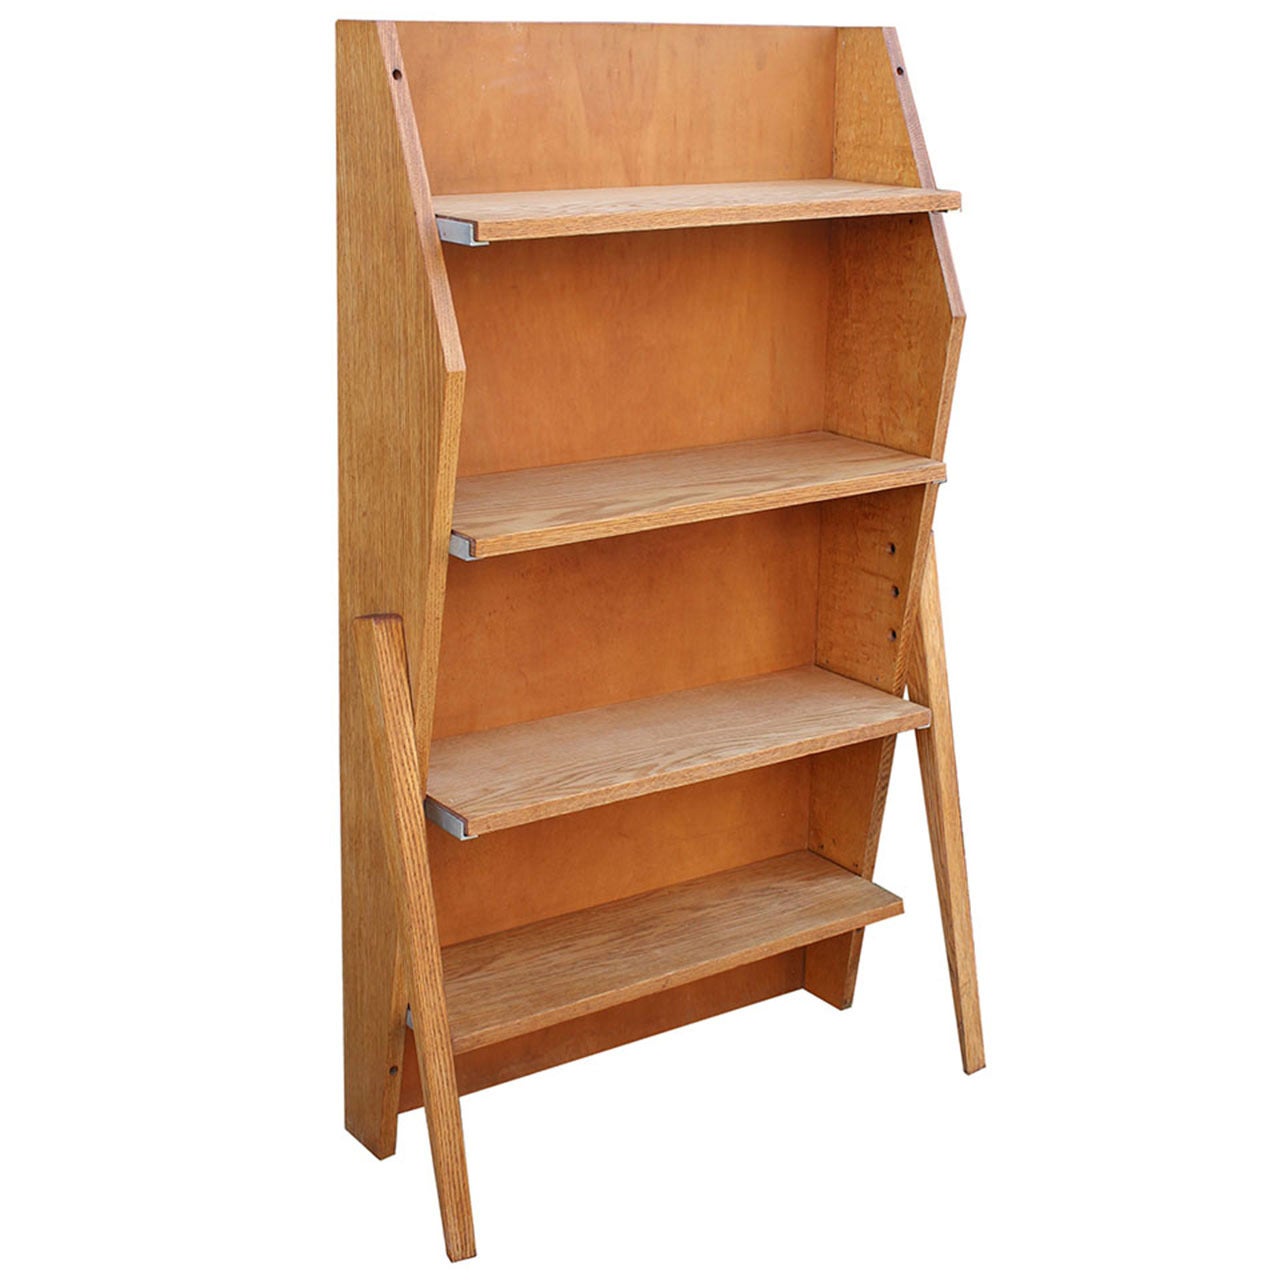 Prouvé Style Book Shelf